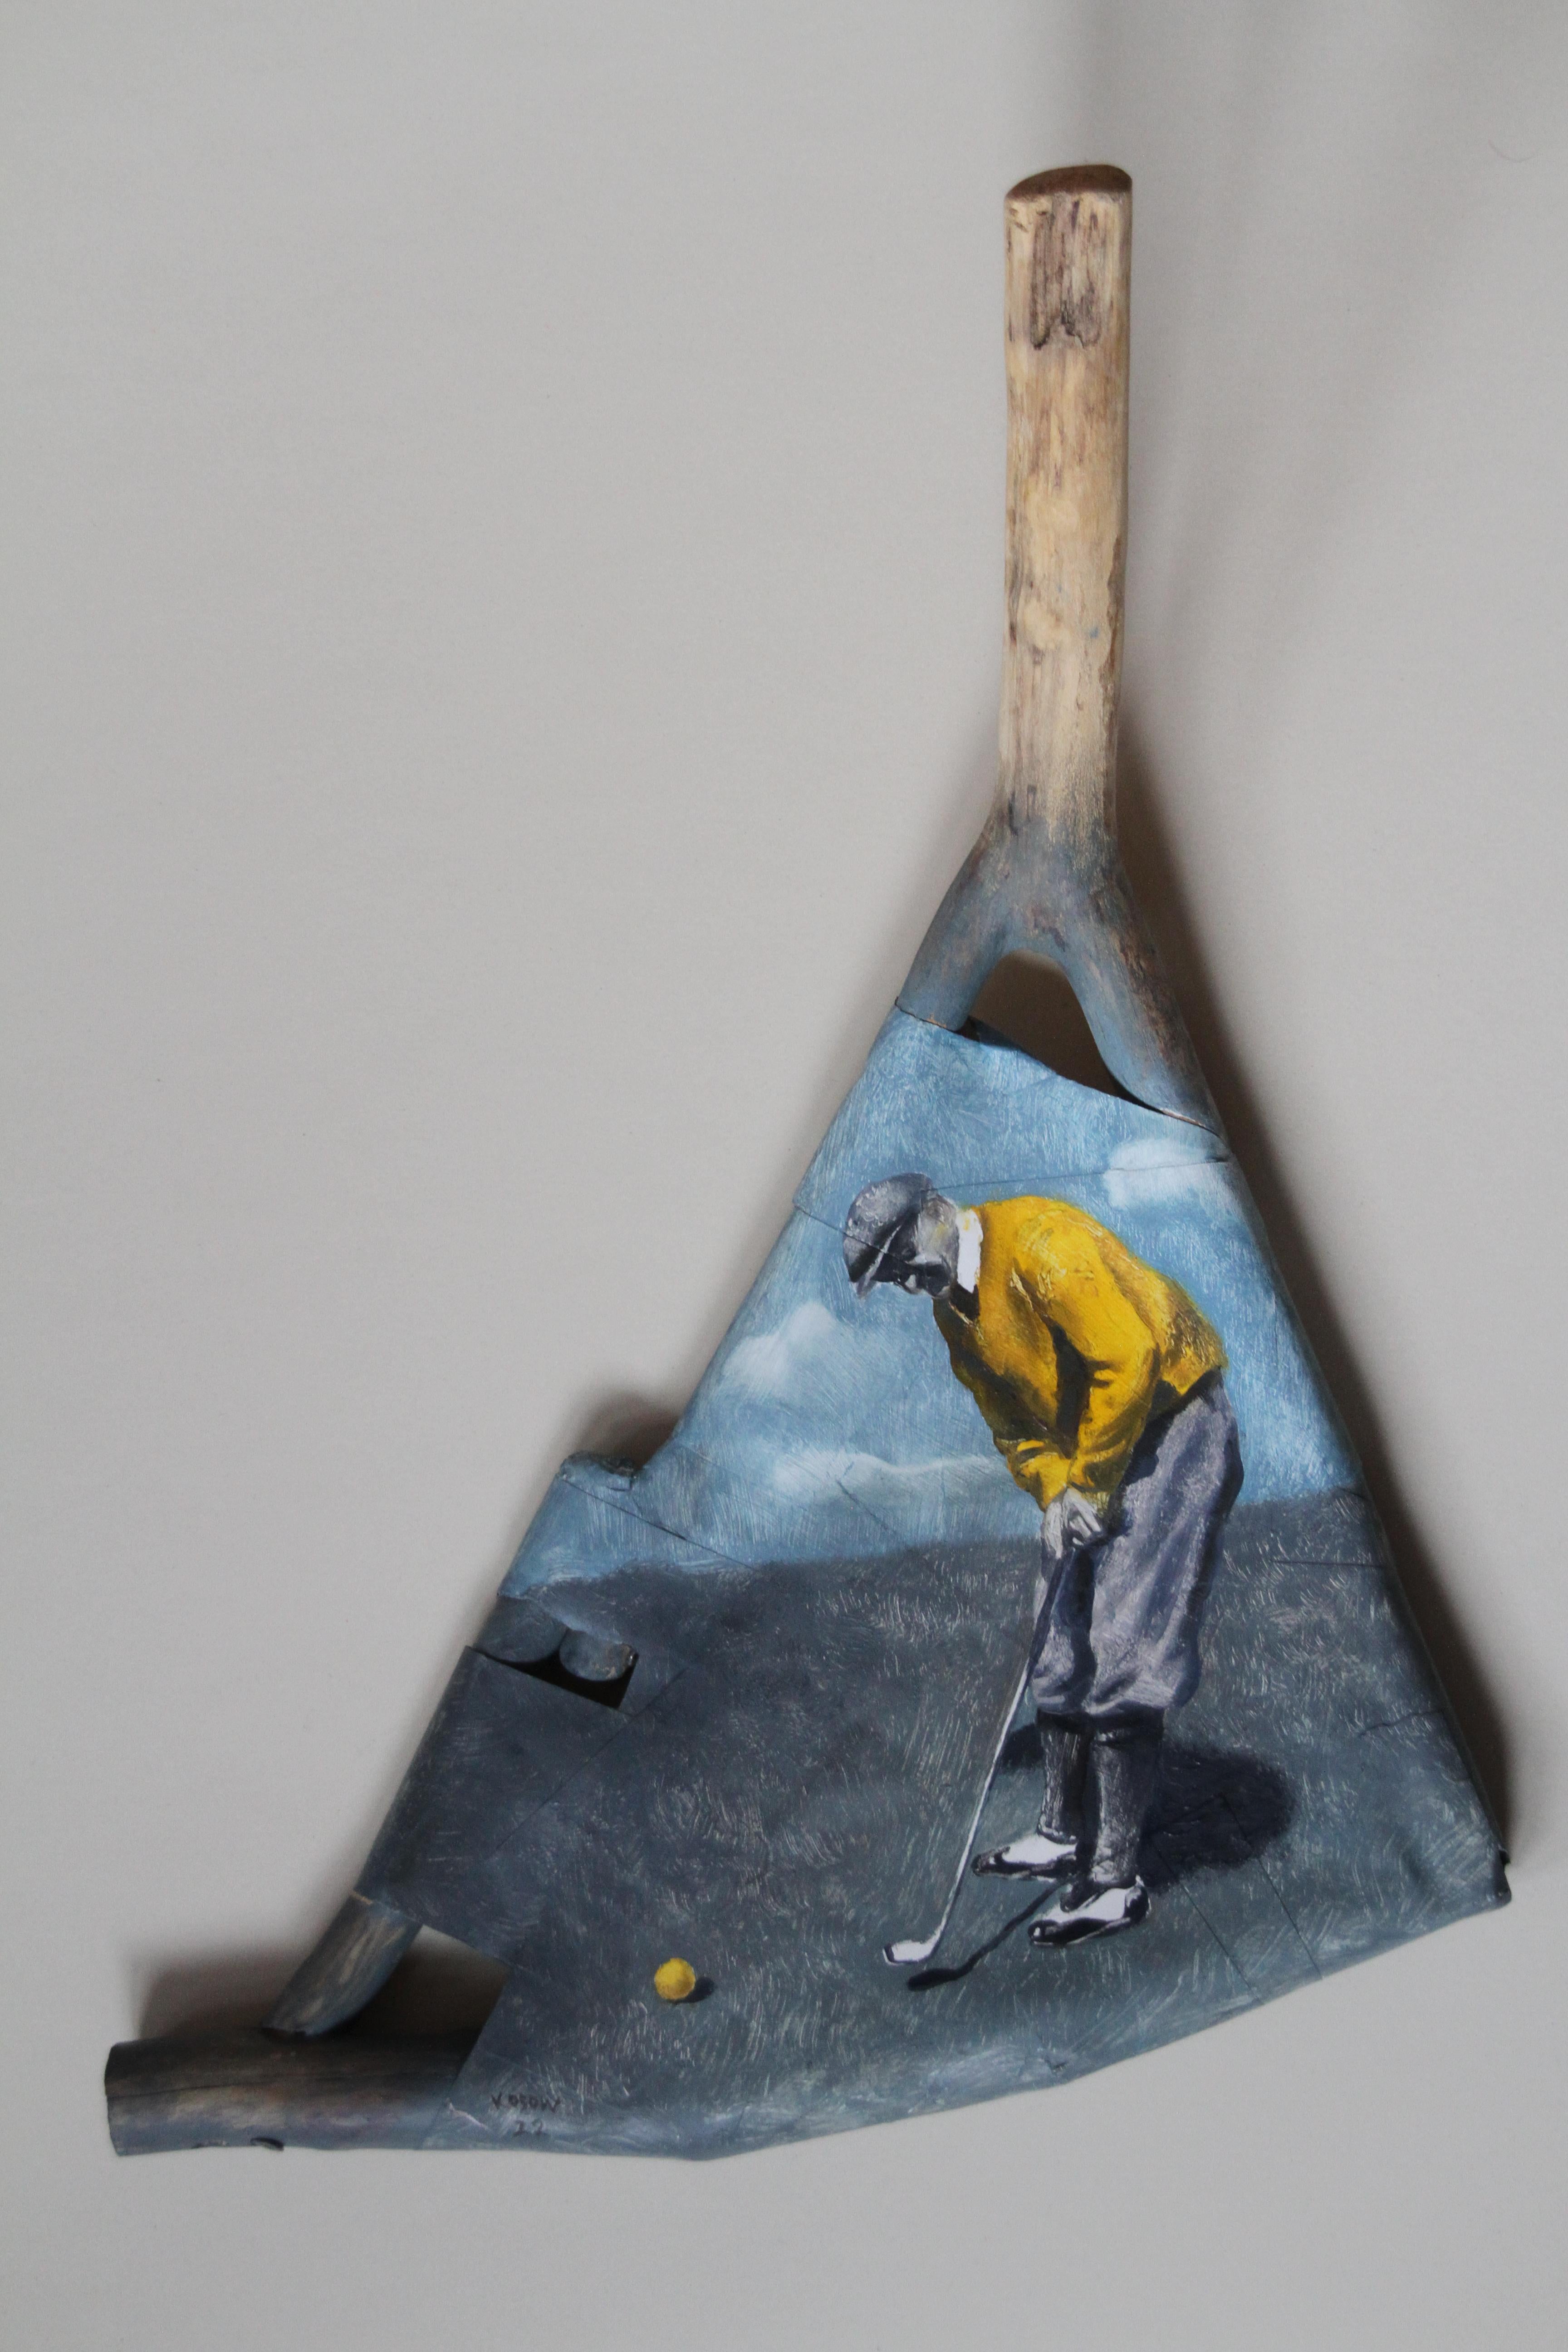 Une autre sculpture tridimensionnelle d'un golfeur vintage peint sur bois jaune chemise